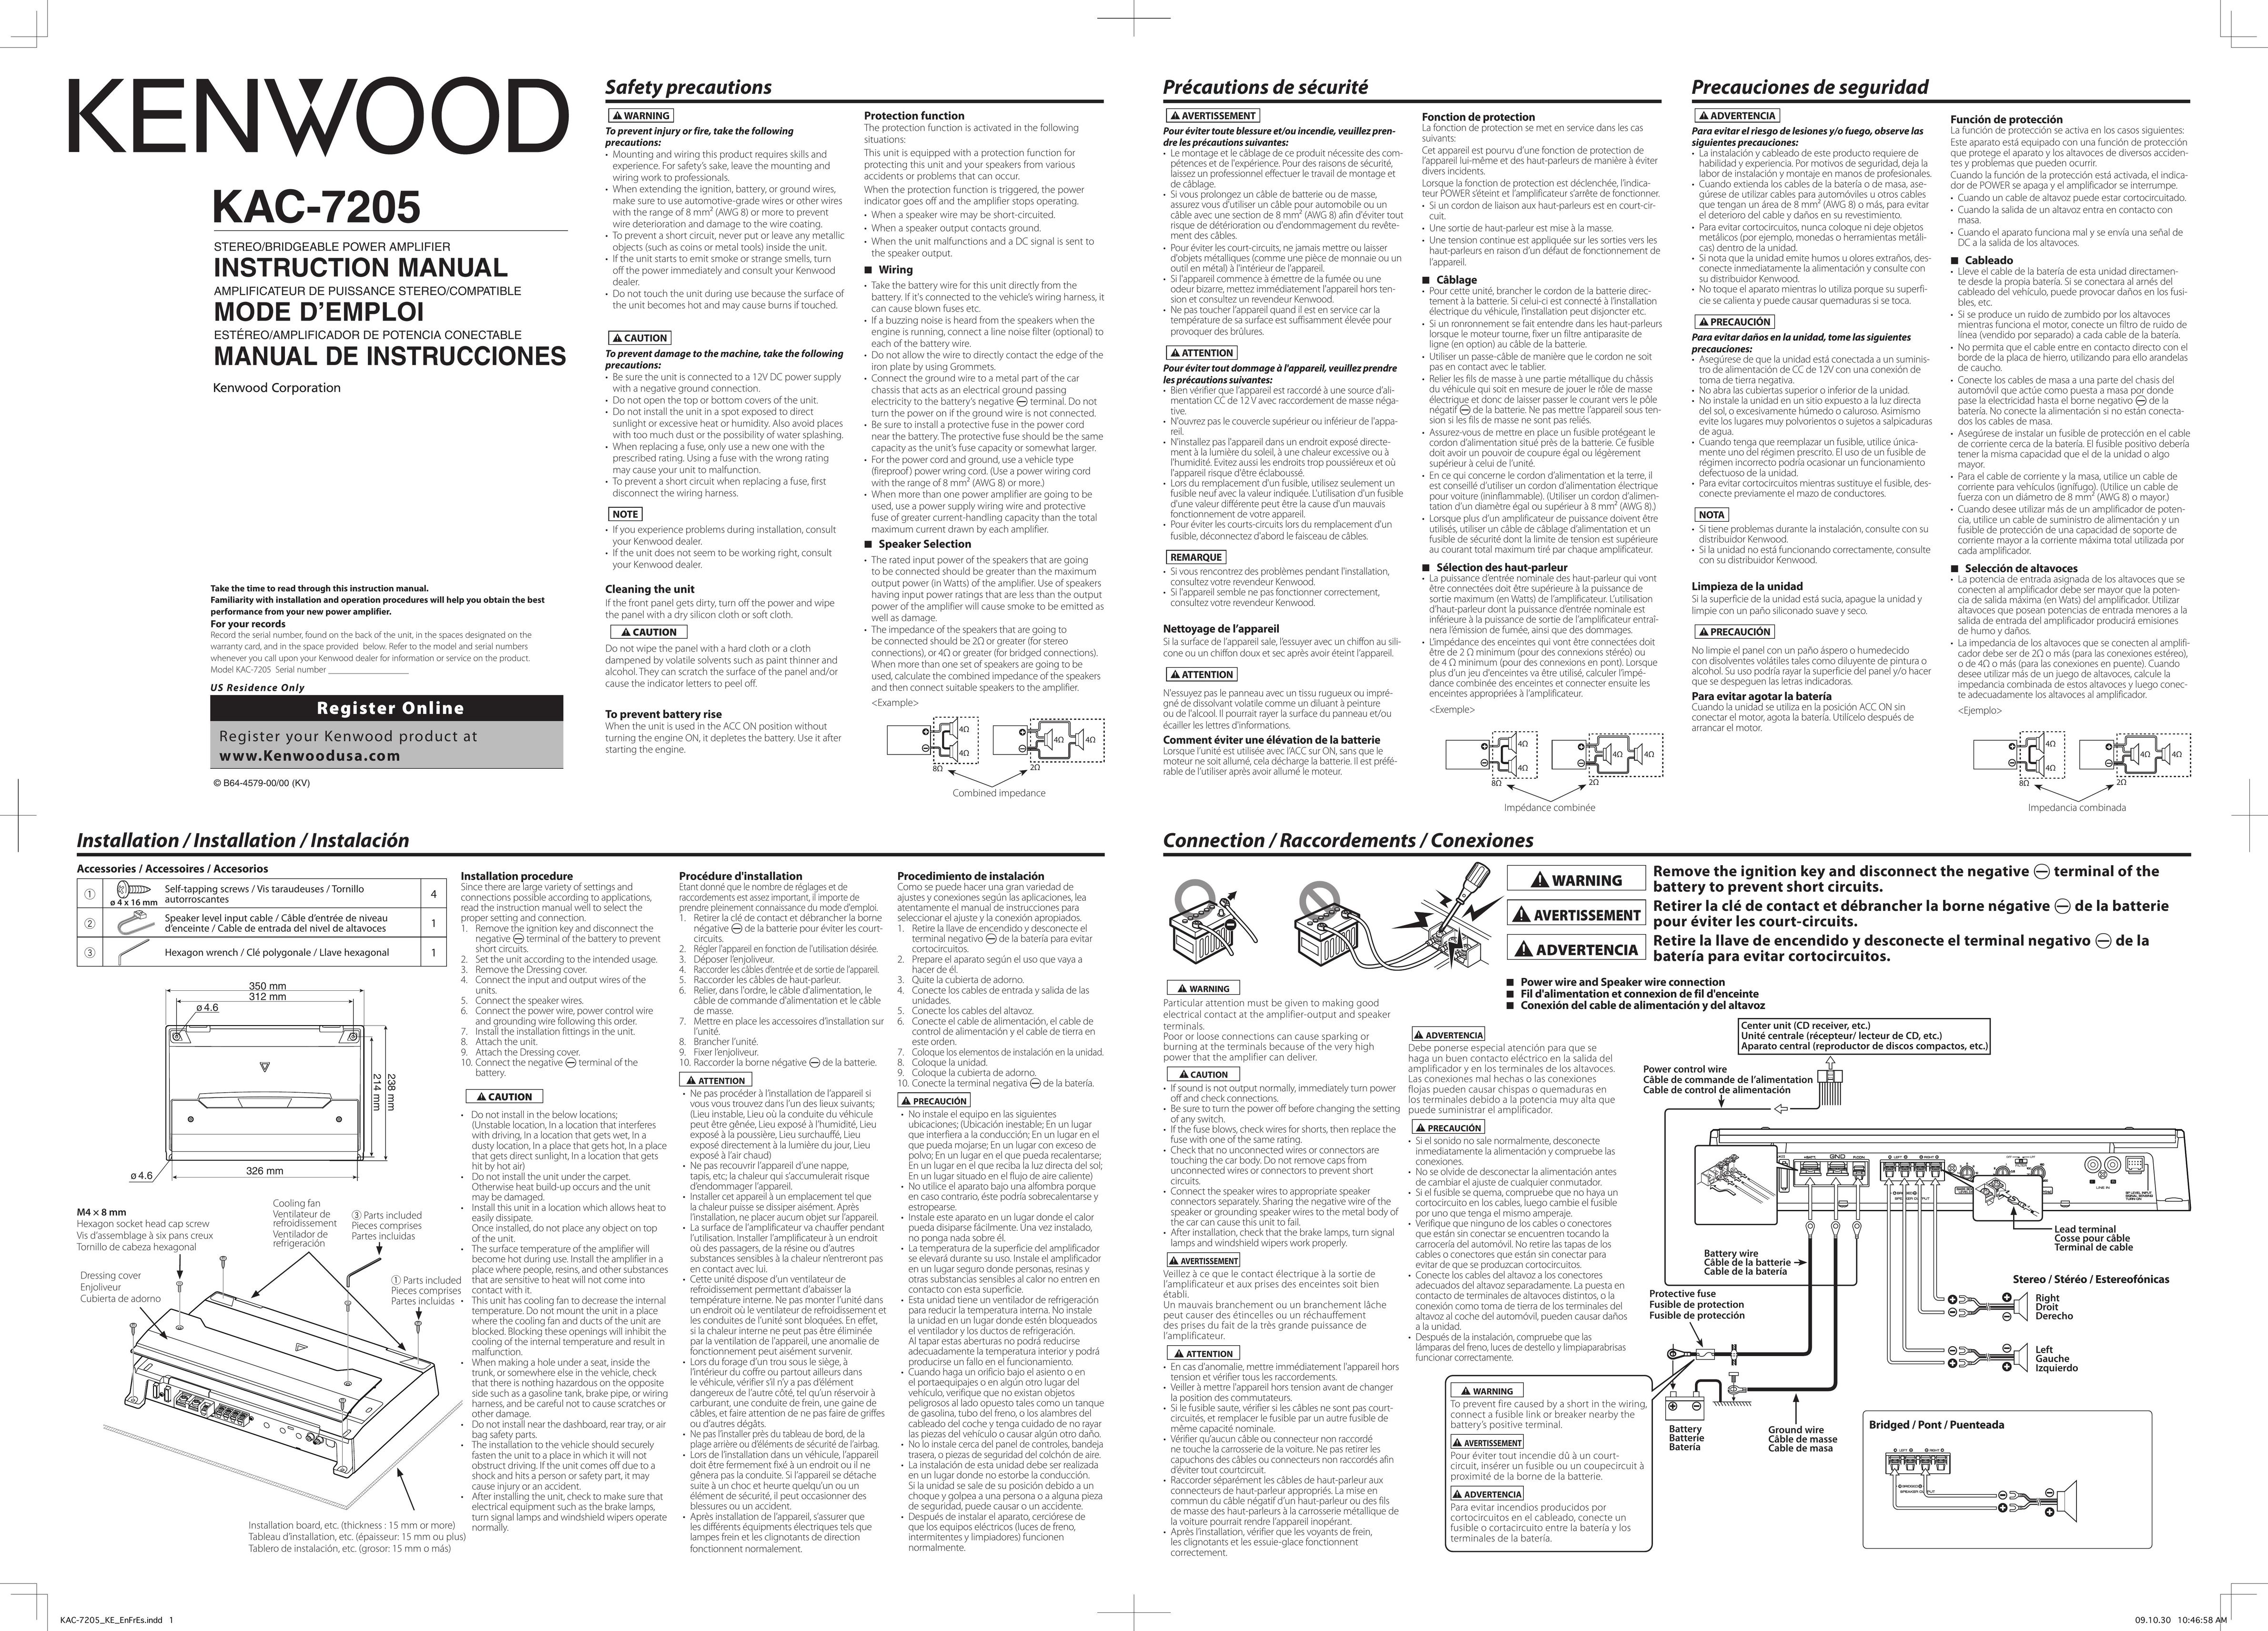 Kenwood KAC-7205 Car Amplifier User Manual